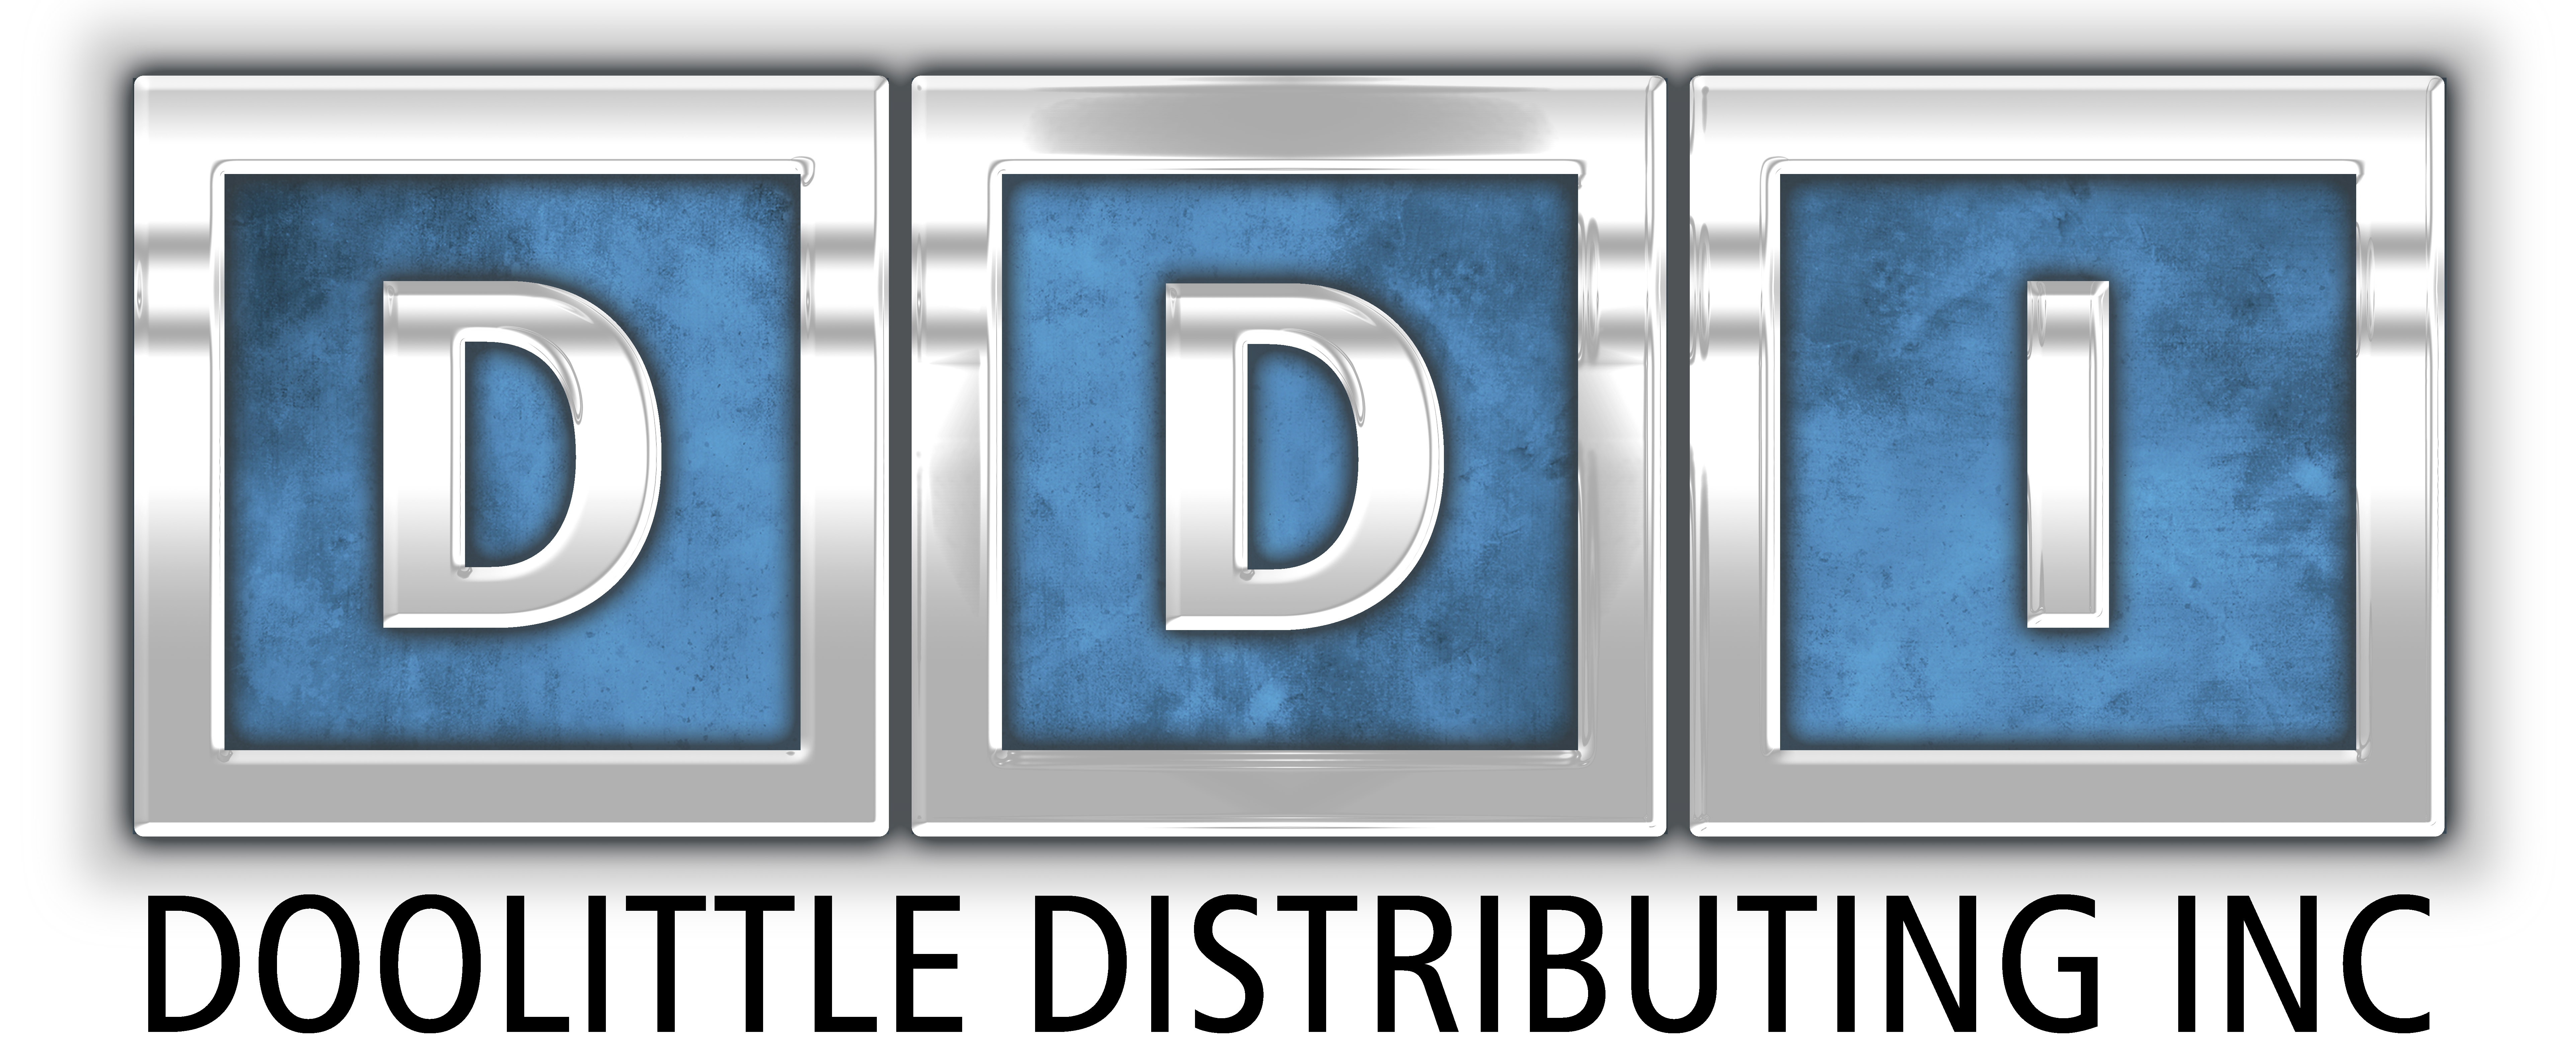 Doolittle Distributing Iinc.